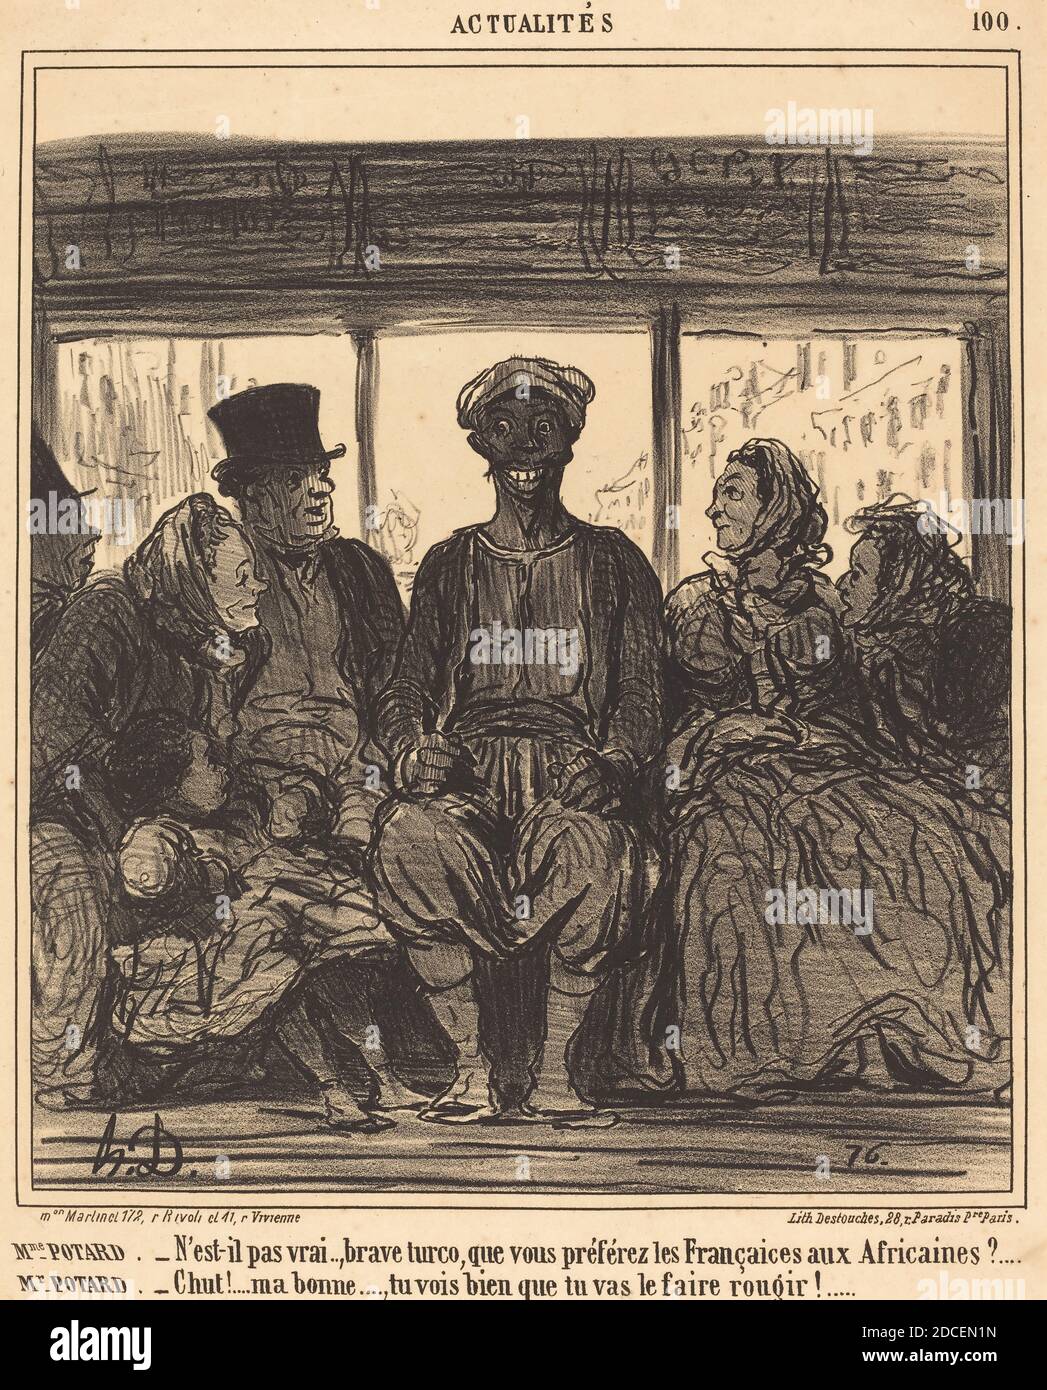 Honoré Daumier, (artist), French, 1808 - 1879, Actualités: Mme. Potard - N'est-il pas vrai, brave turco..., Actualités, (series), 1859, lithograph Stock Photo